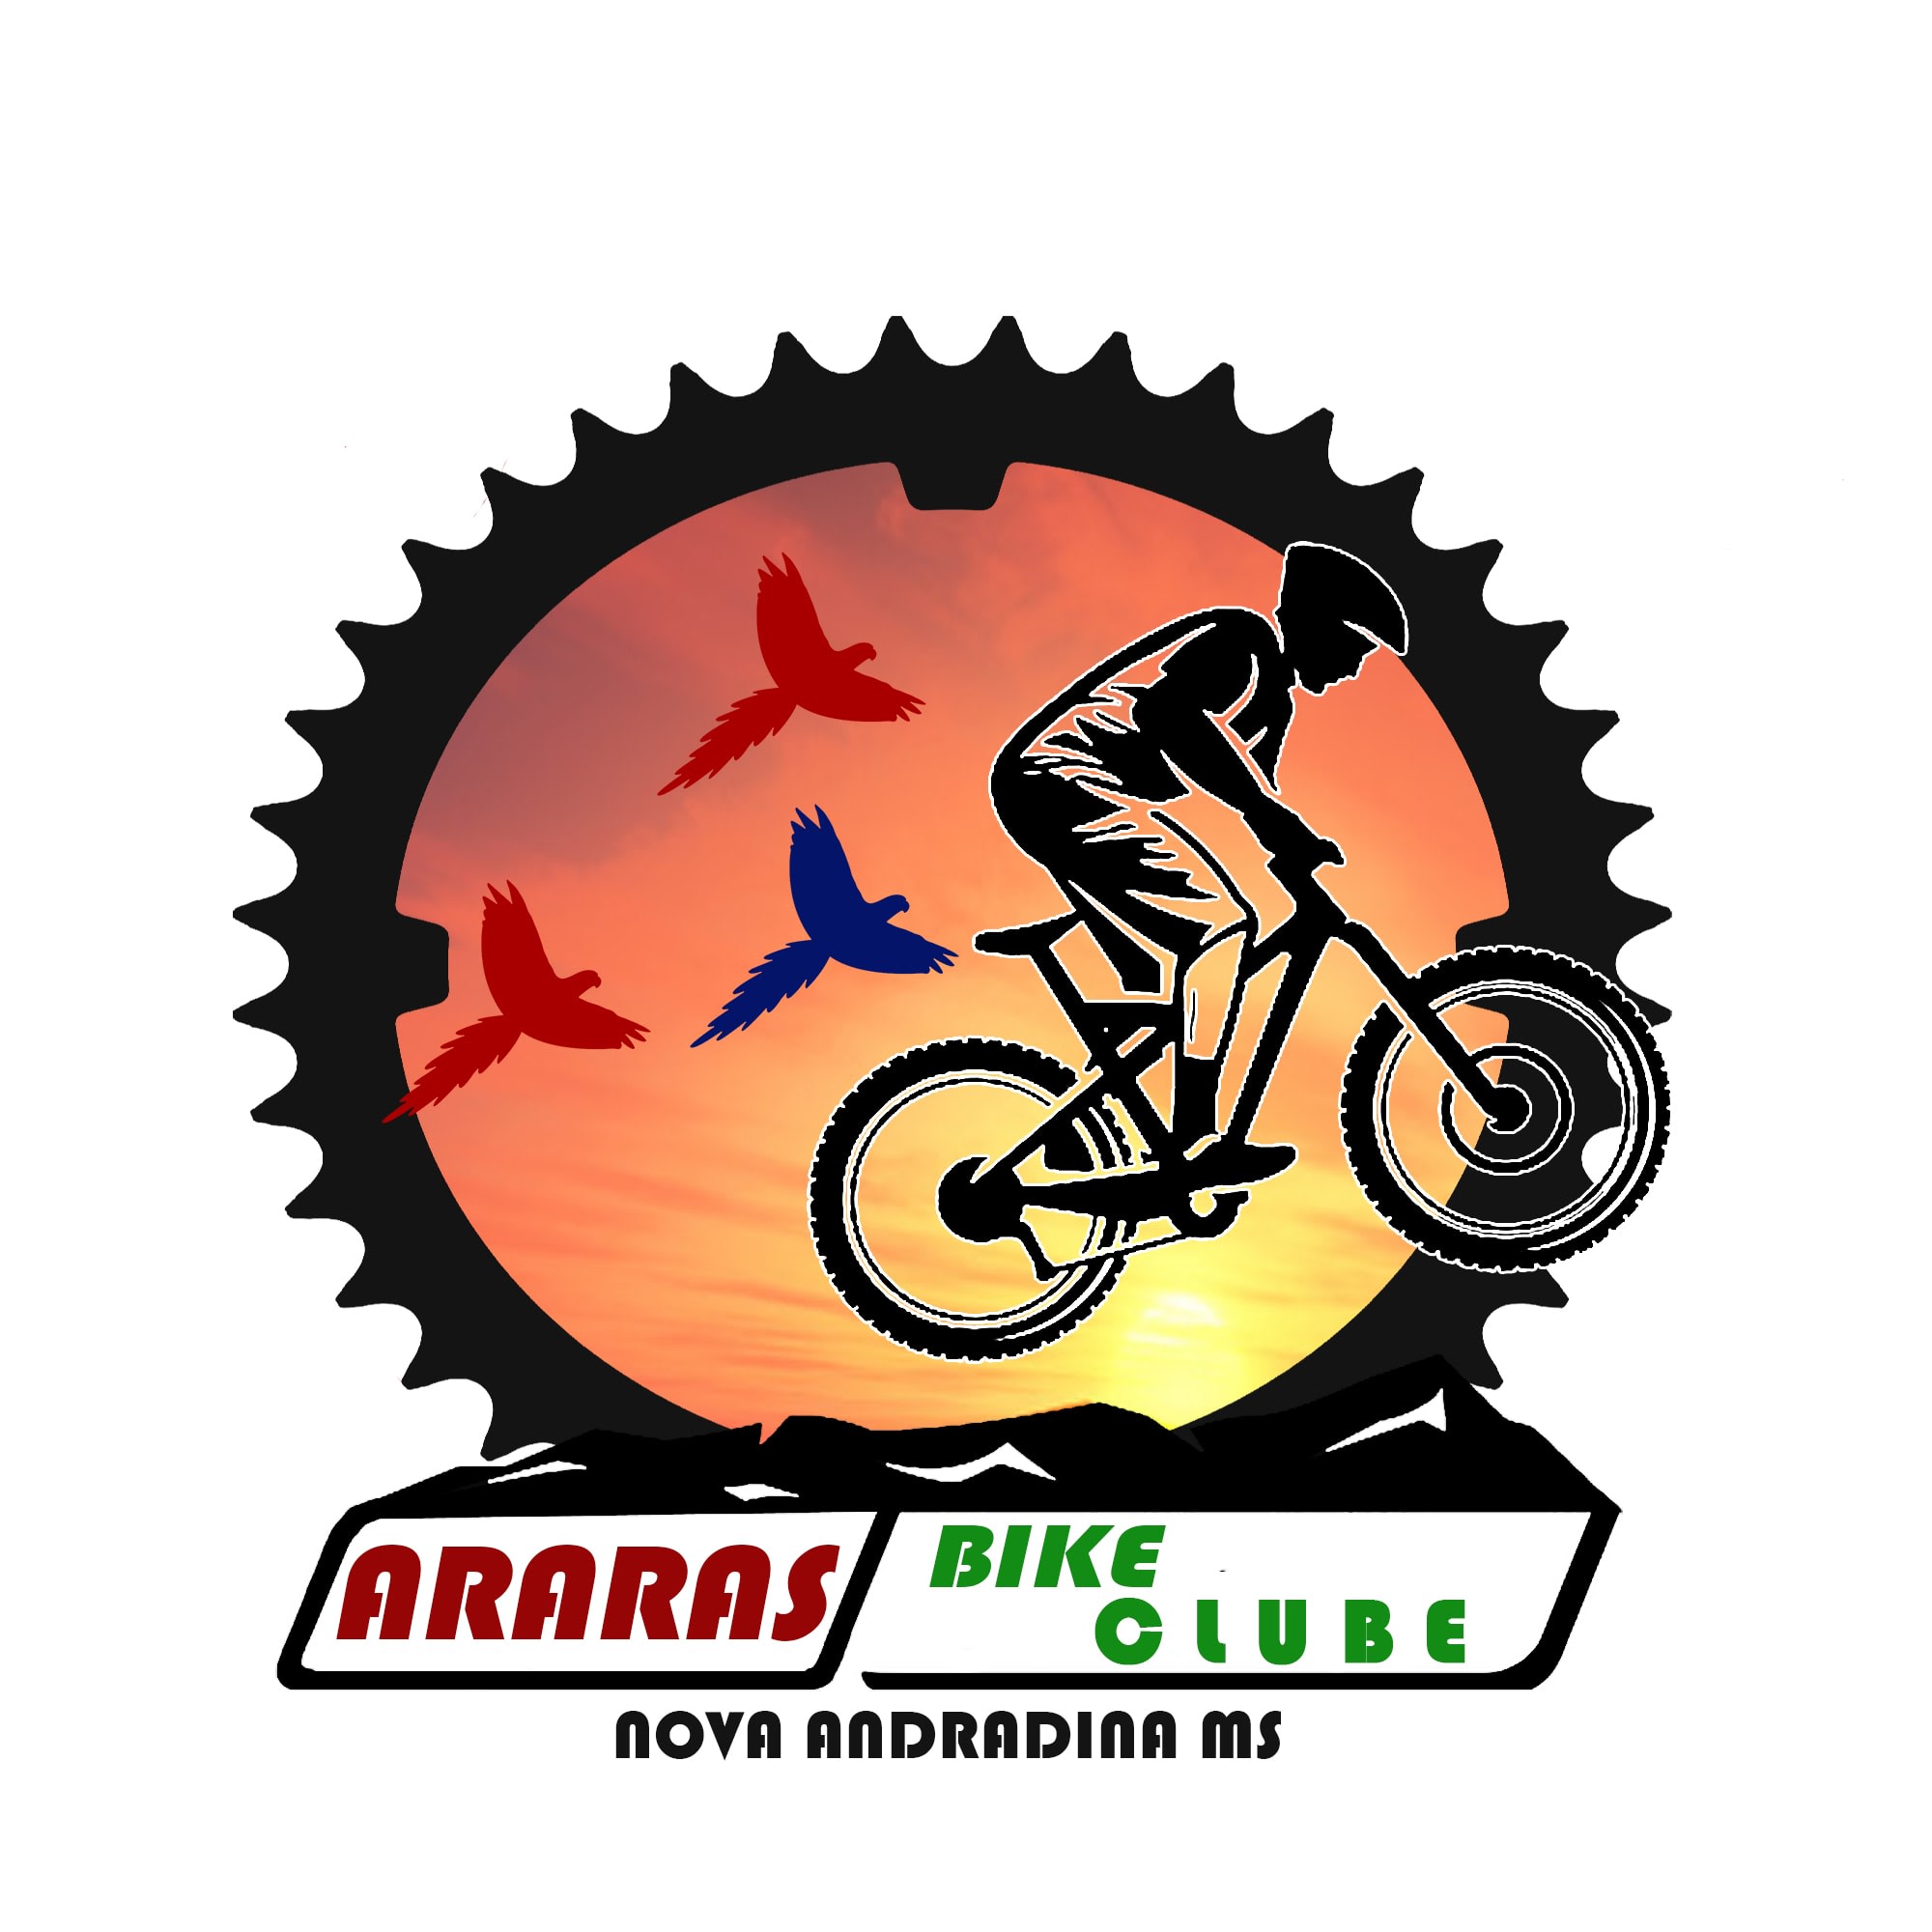 Araras Bike Clube Nova Andradina Ms